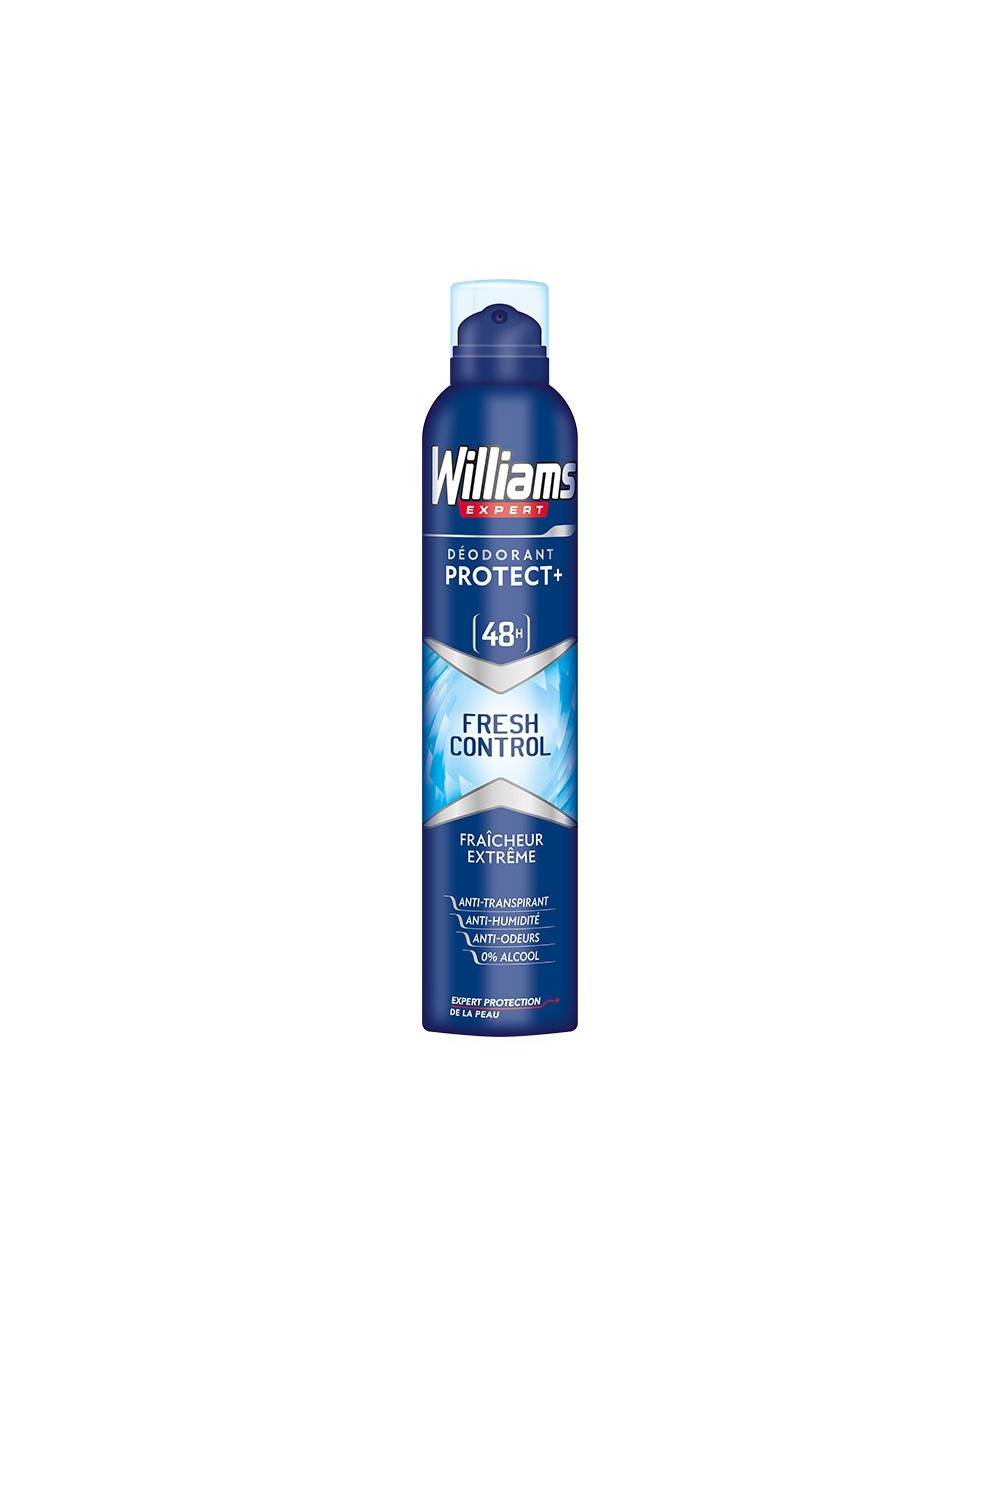 WILLIAMS EXPERT - William Expert Fresh Control 48h Deodorant Spray 48h 200ml